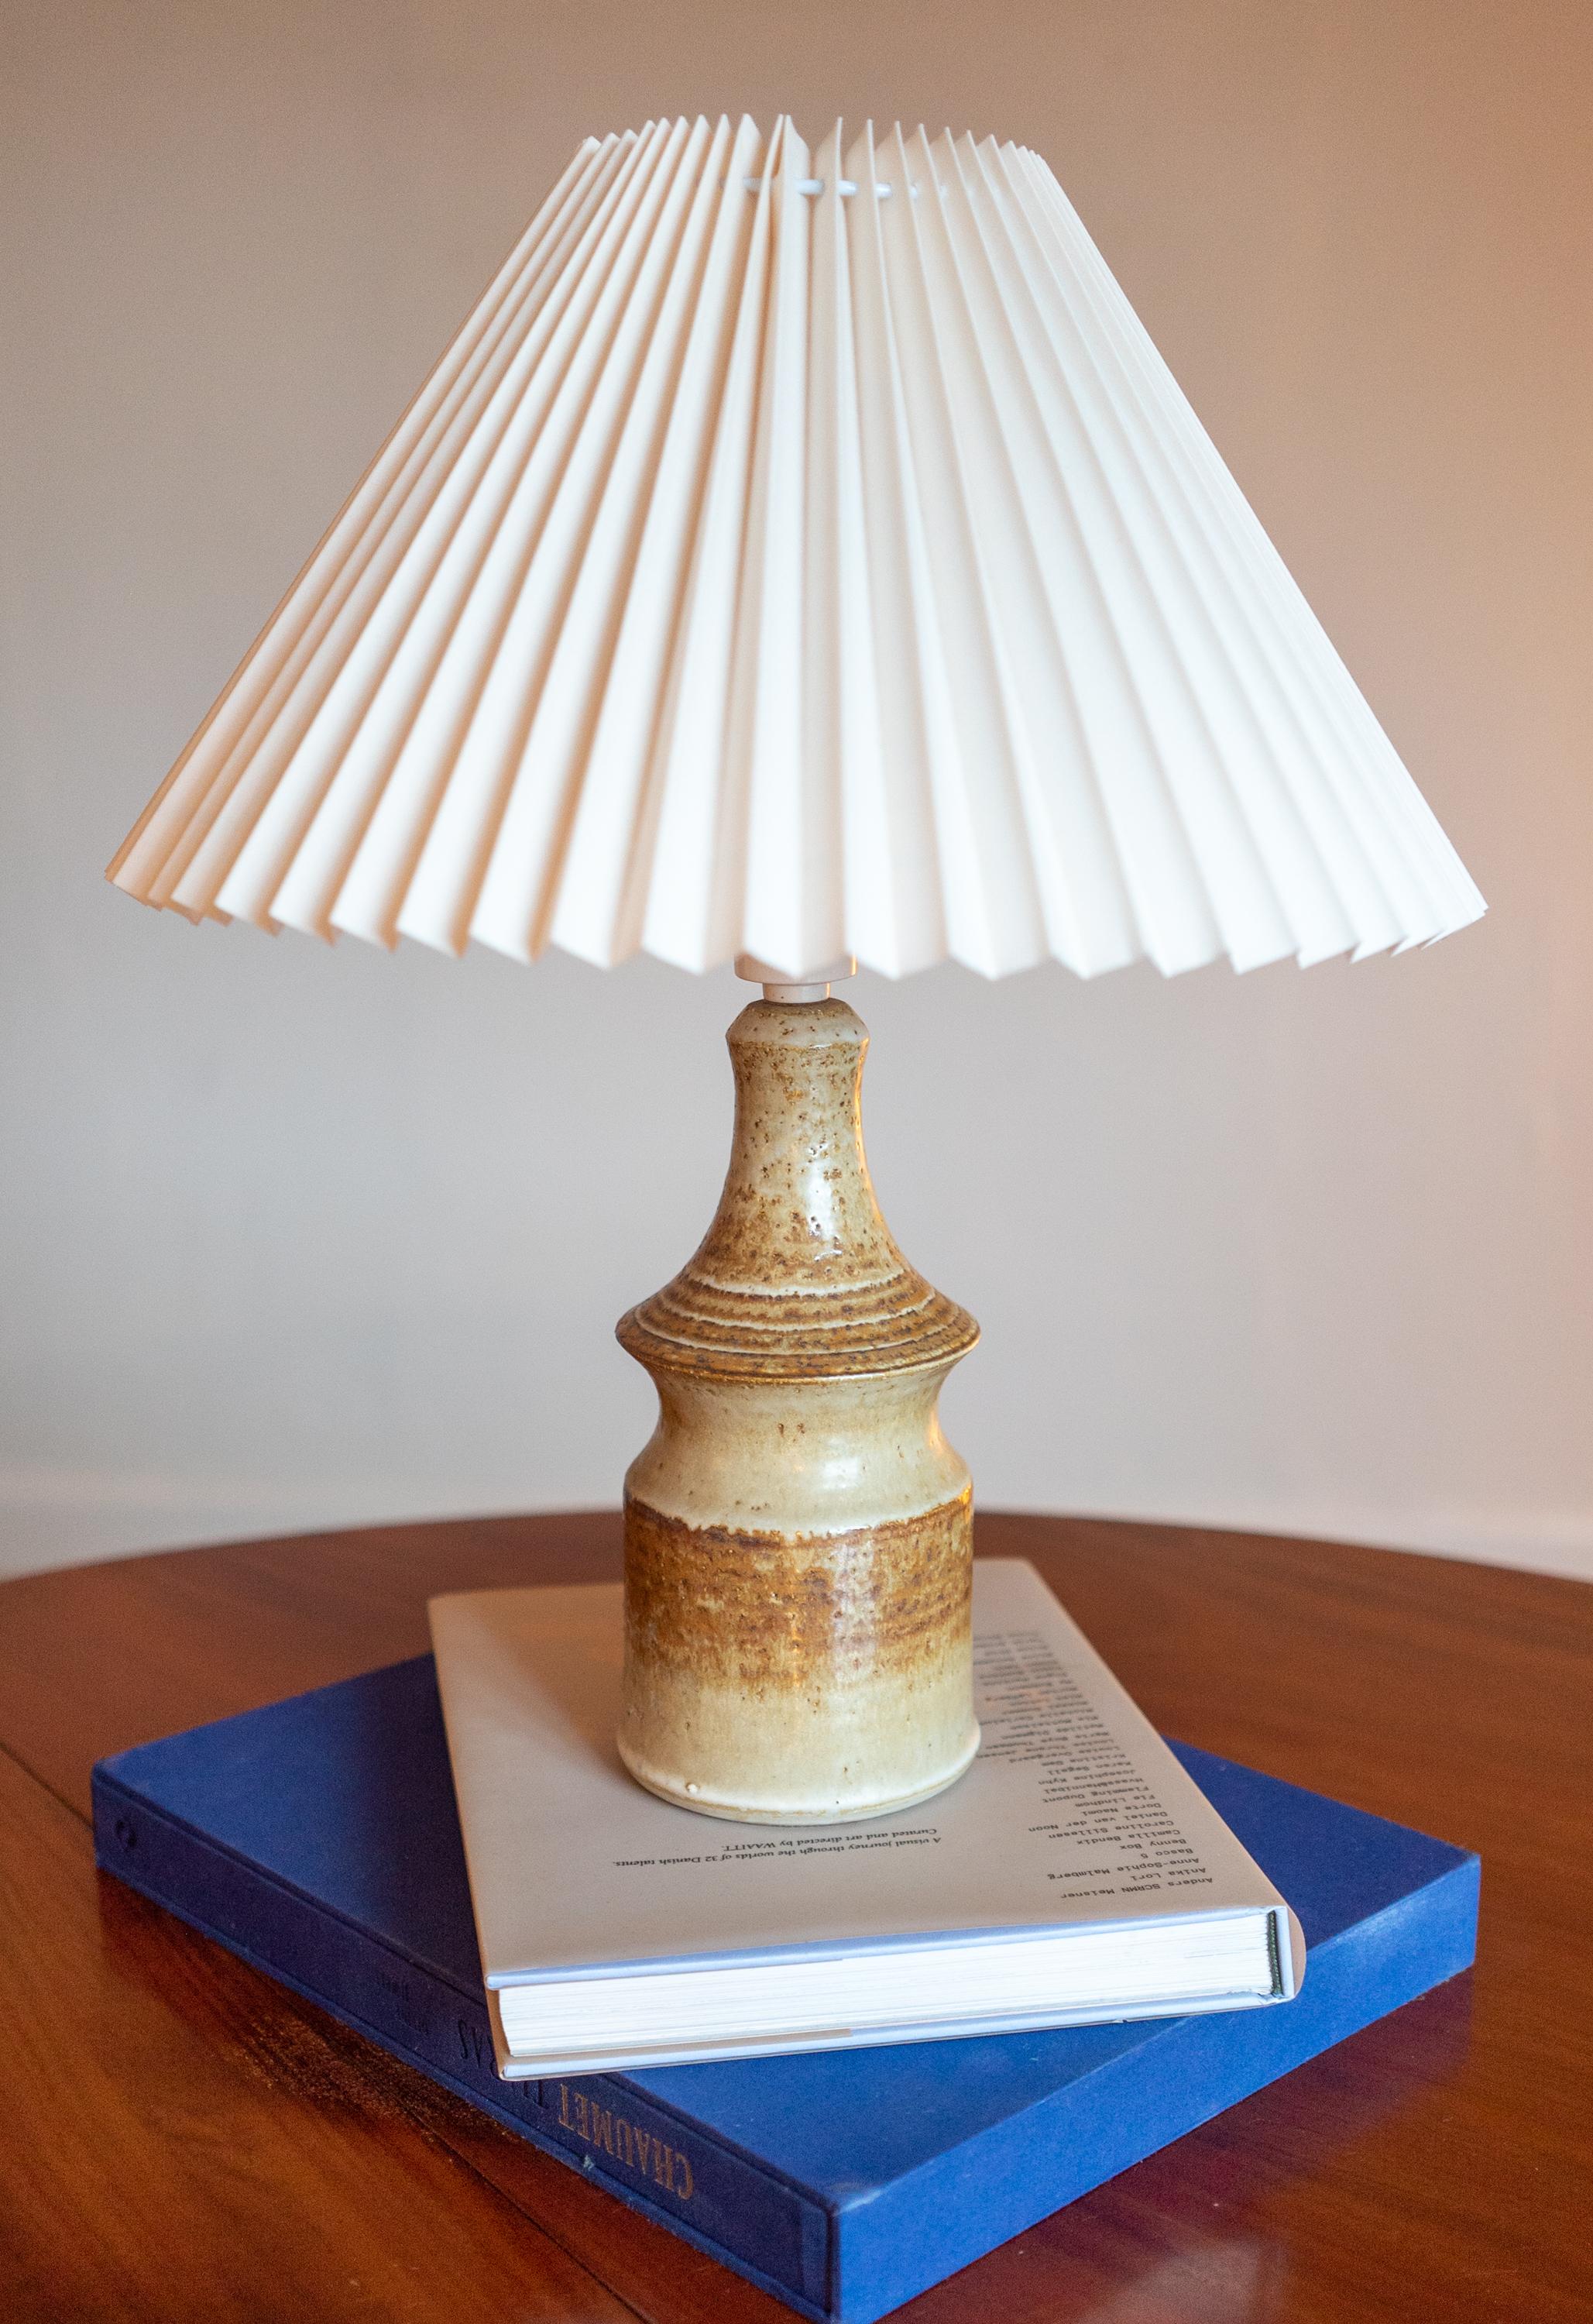 Lampe de table en grès fabriquée à la main par Joseph Simon pour Danish Søholm situé sur l'île de Bornholm au Danemark dans les années 1960.

Les caractéristiques de la glaçure sont brunes. Estampillé et signé sur la base.

Vendu sans abat-jour.